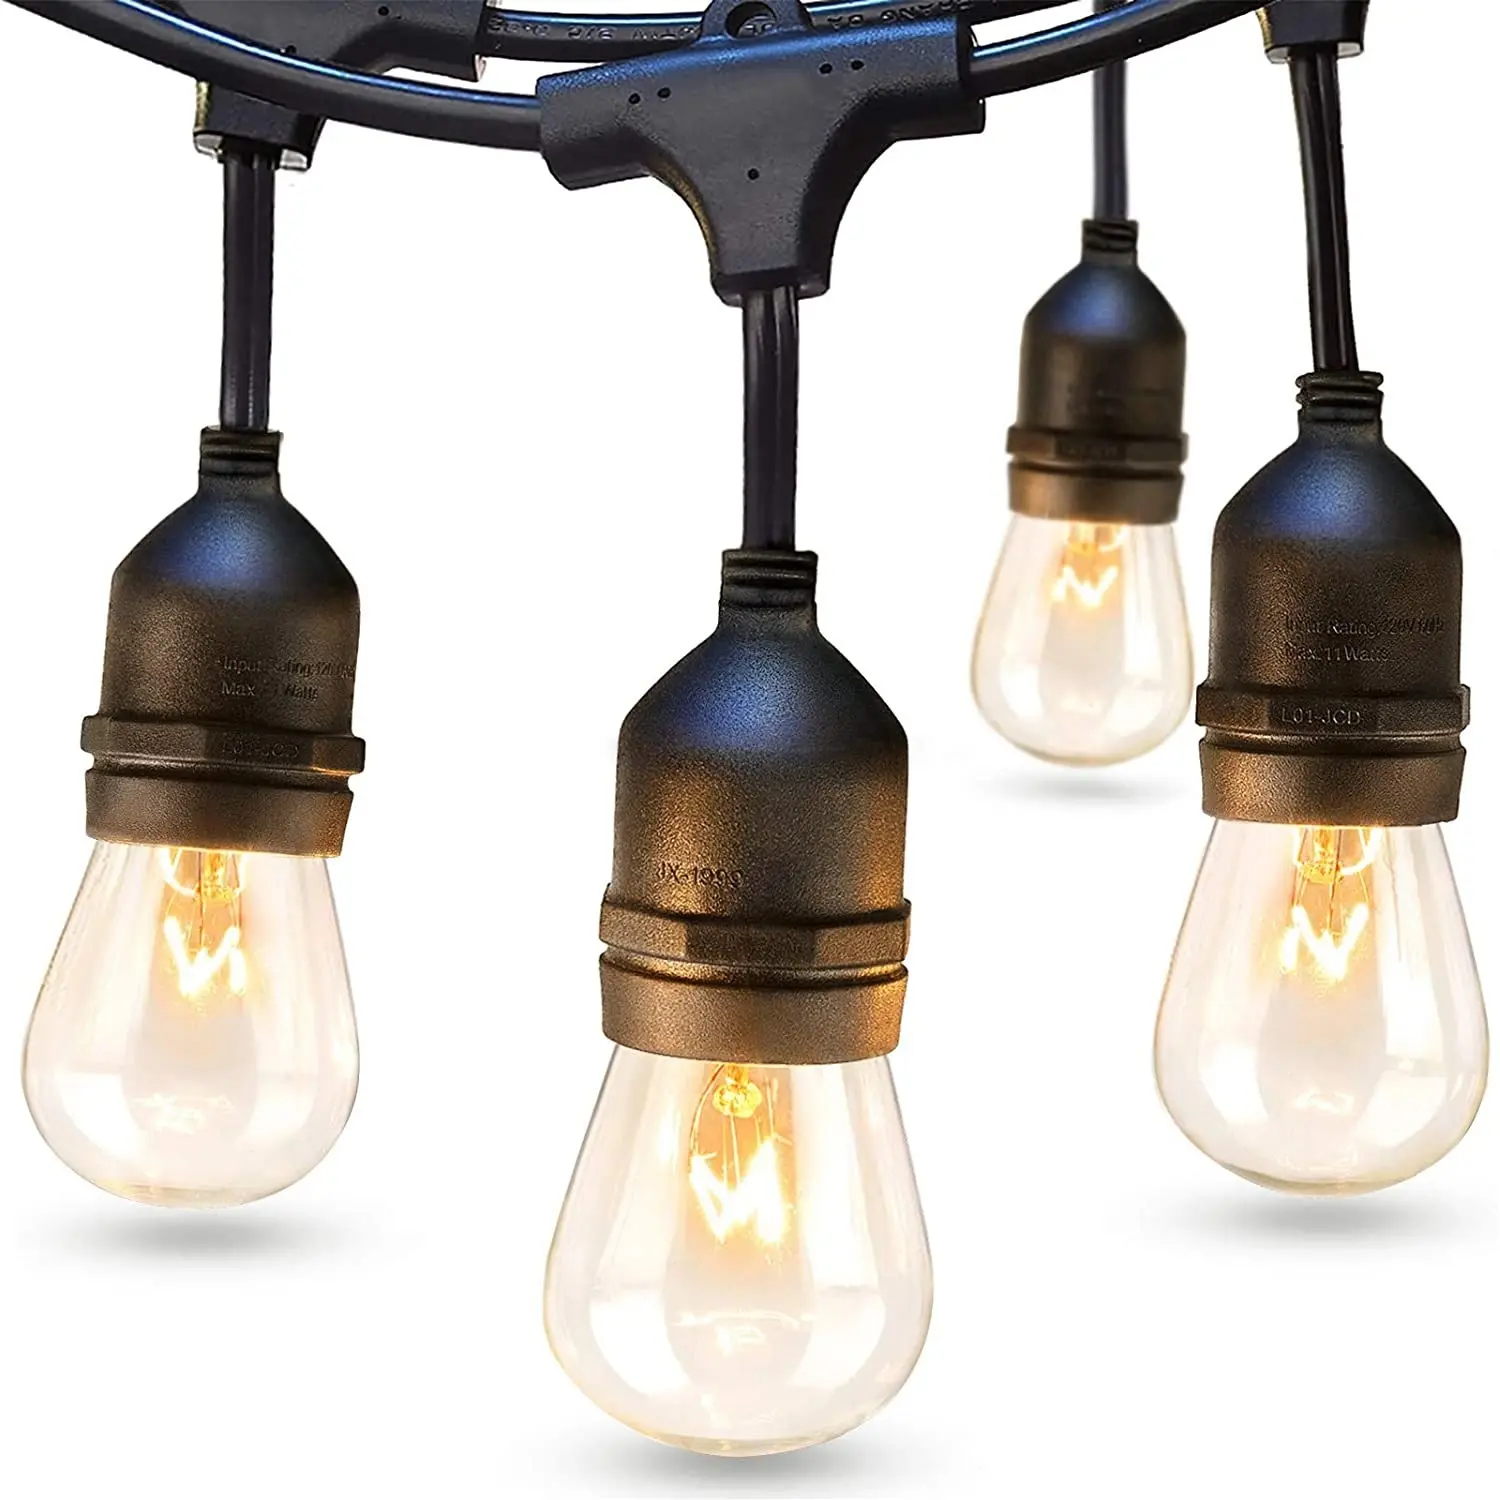 Customizable 5meter/10meter/15 meter/20meter Outdoor String Lights Commercial Grade Weatherproof Strand Edisonb Vintage Bulbs